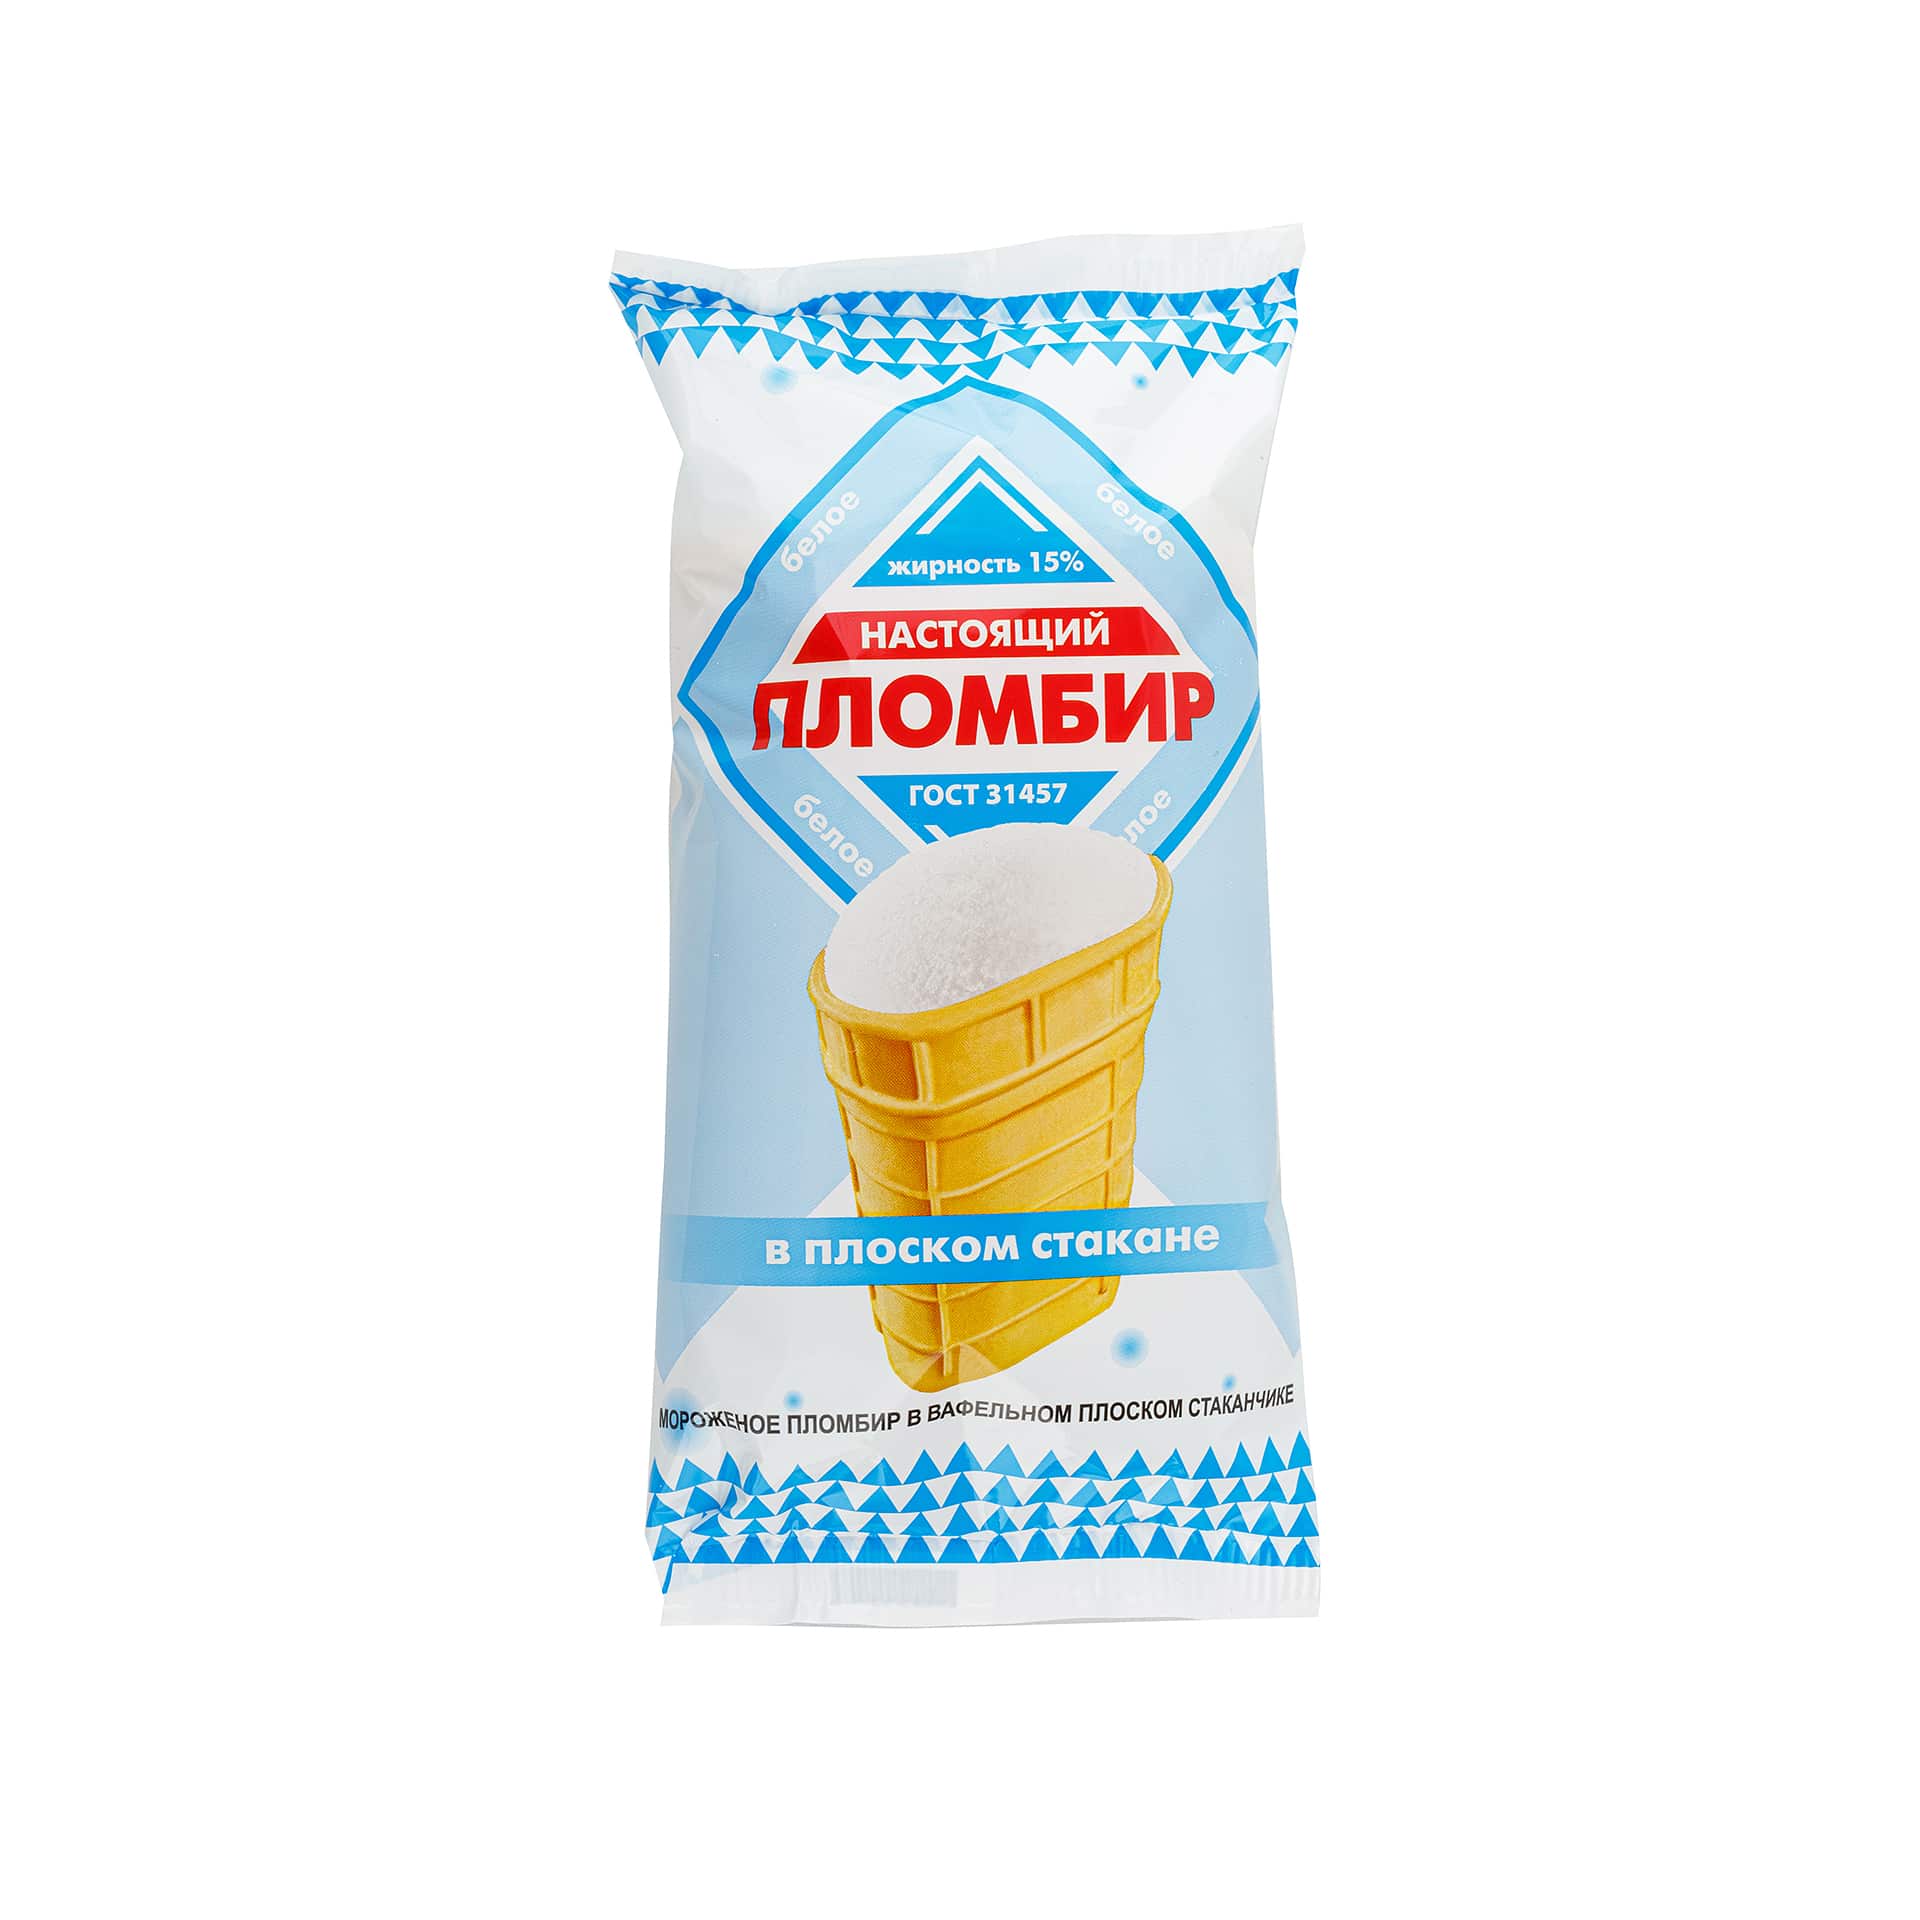 Мороженое пломбир вафельный плоский стаканчик Настоящий пломбир 90 г 628LED, общий вид, купить оптом с доставкой по москве и московской области, недорого, низкая цена